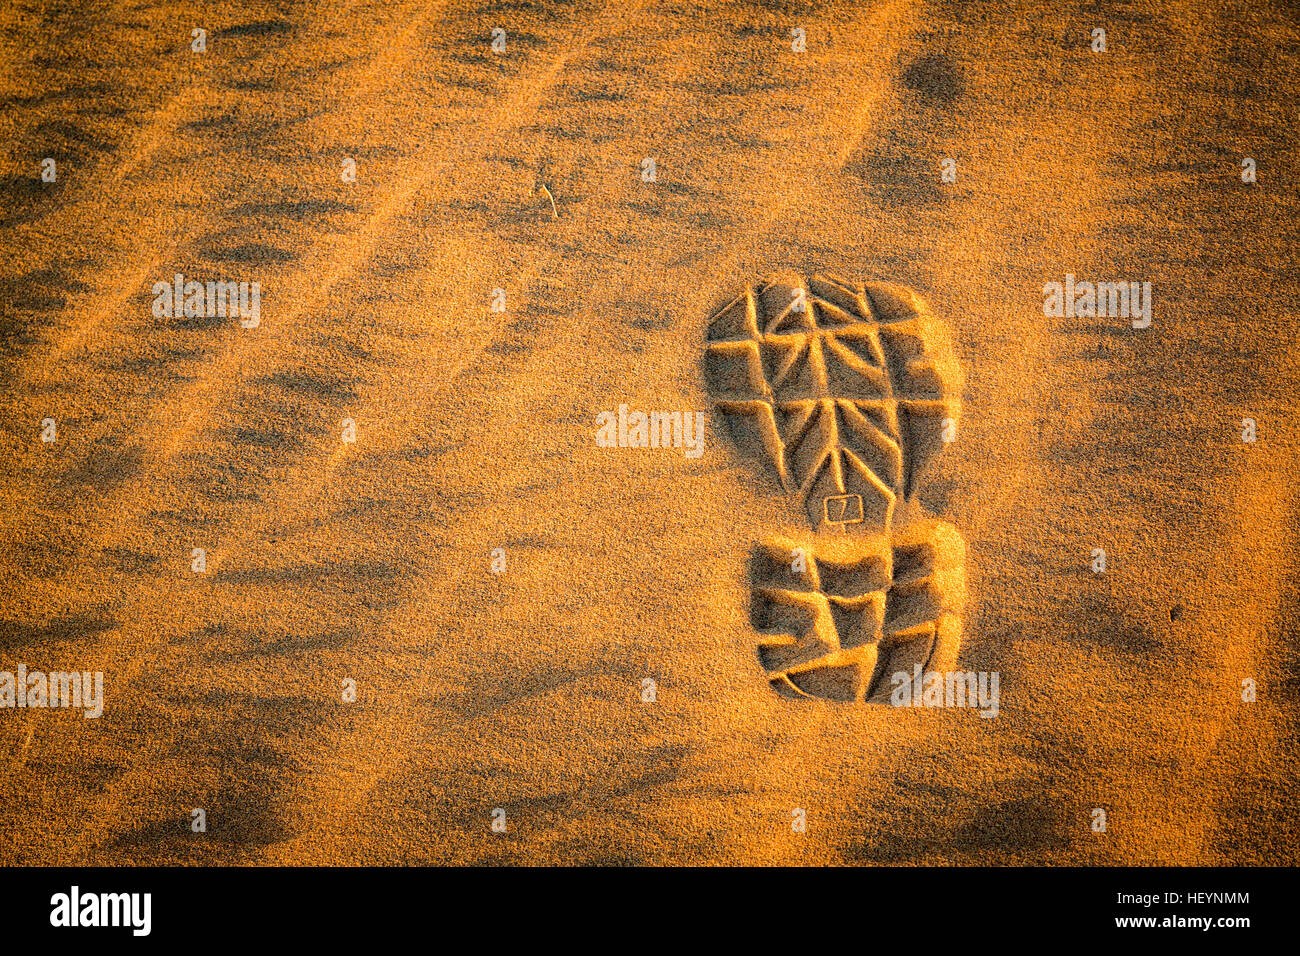 Orme nella sabbia del deserto del Sahara, Marocco Foto Stock